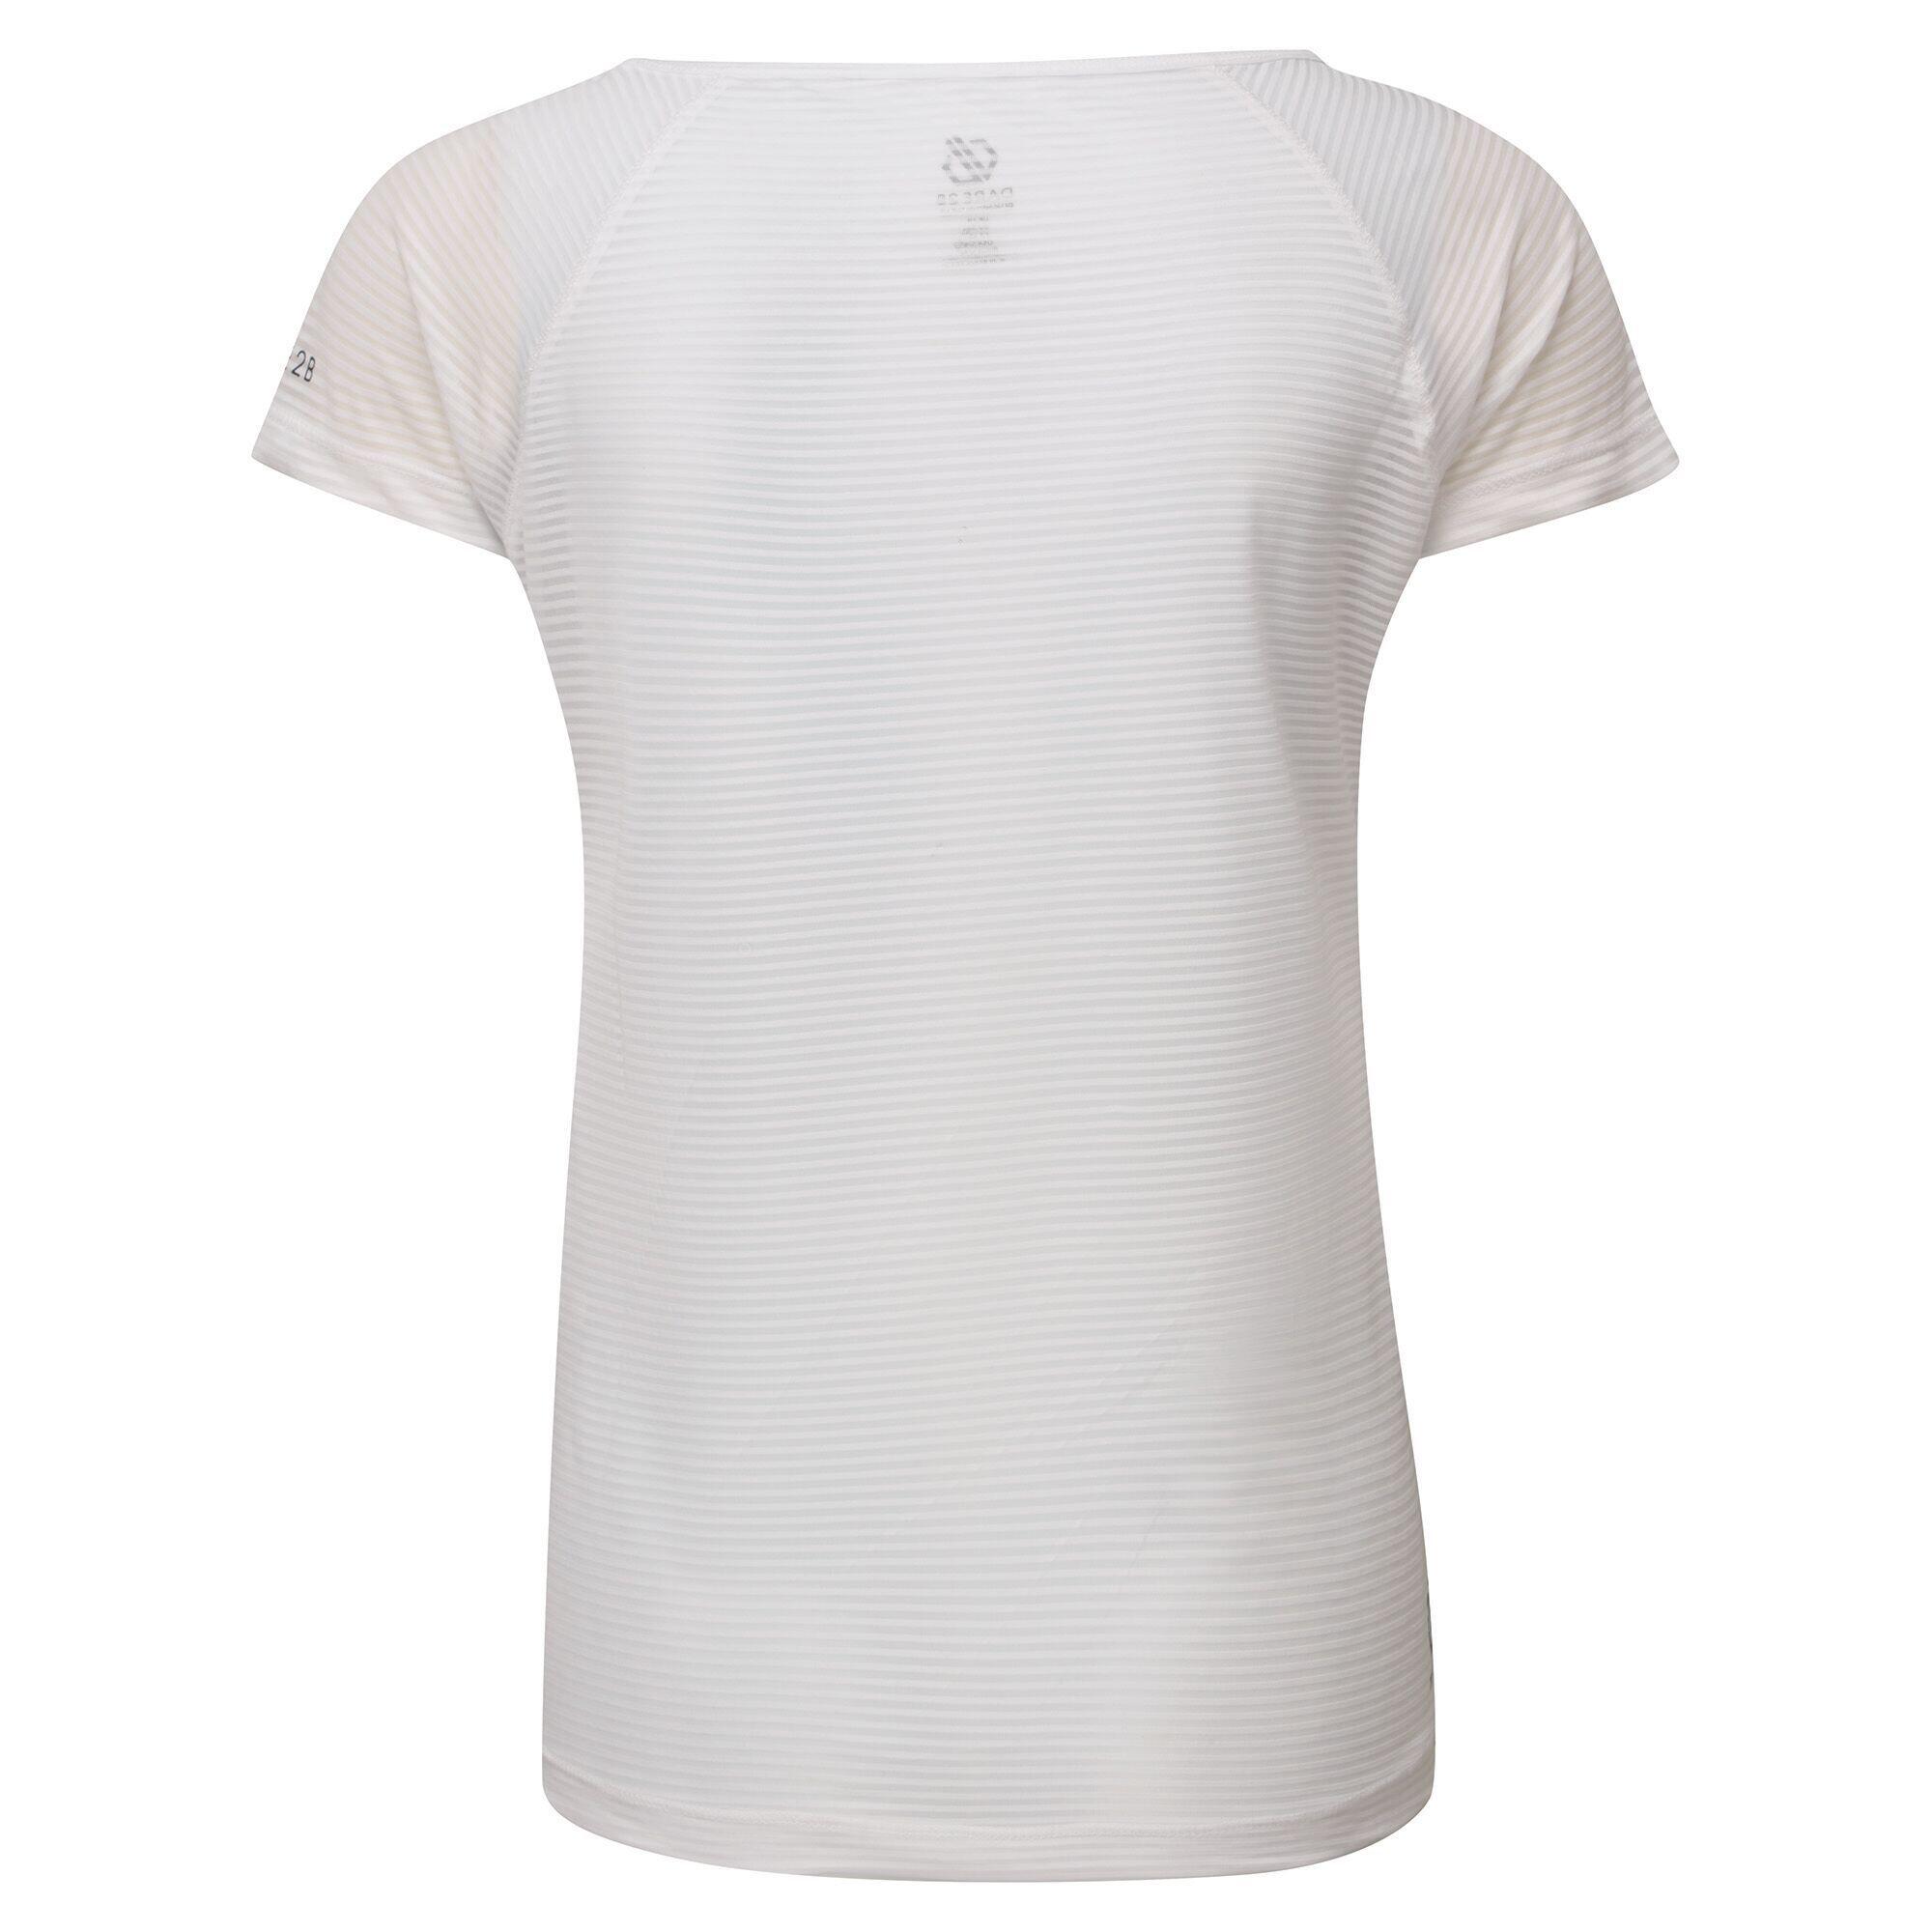 Womens/Ladies Defy TShirt (White) 2/4